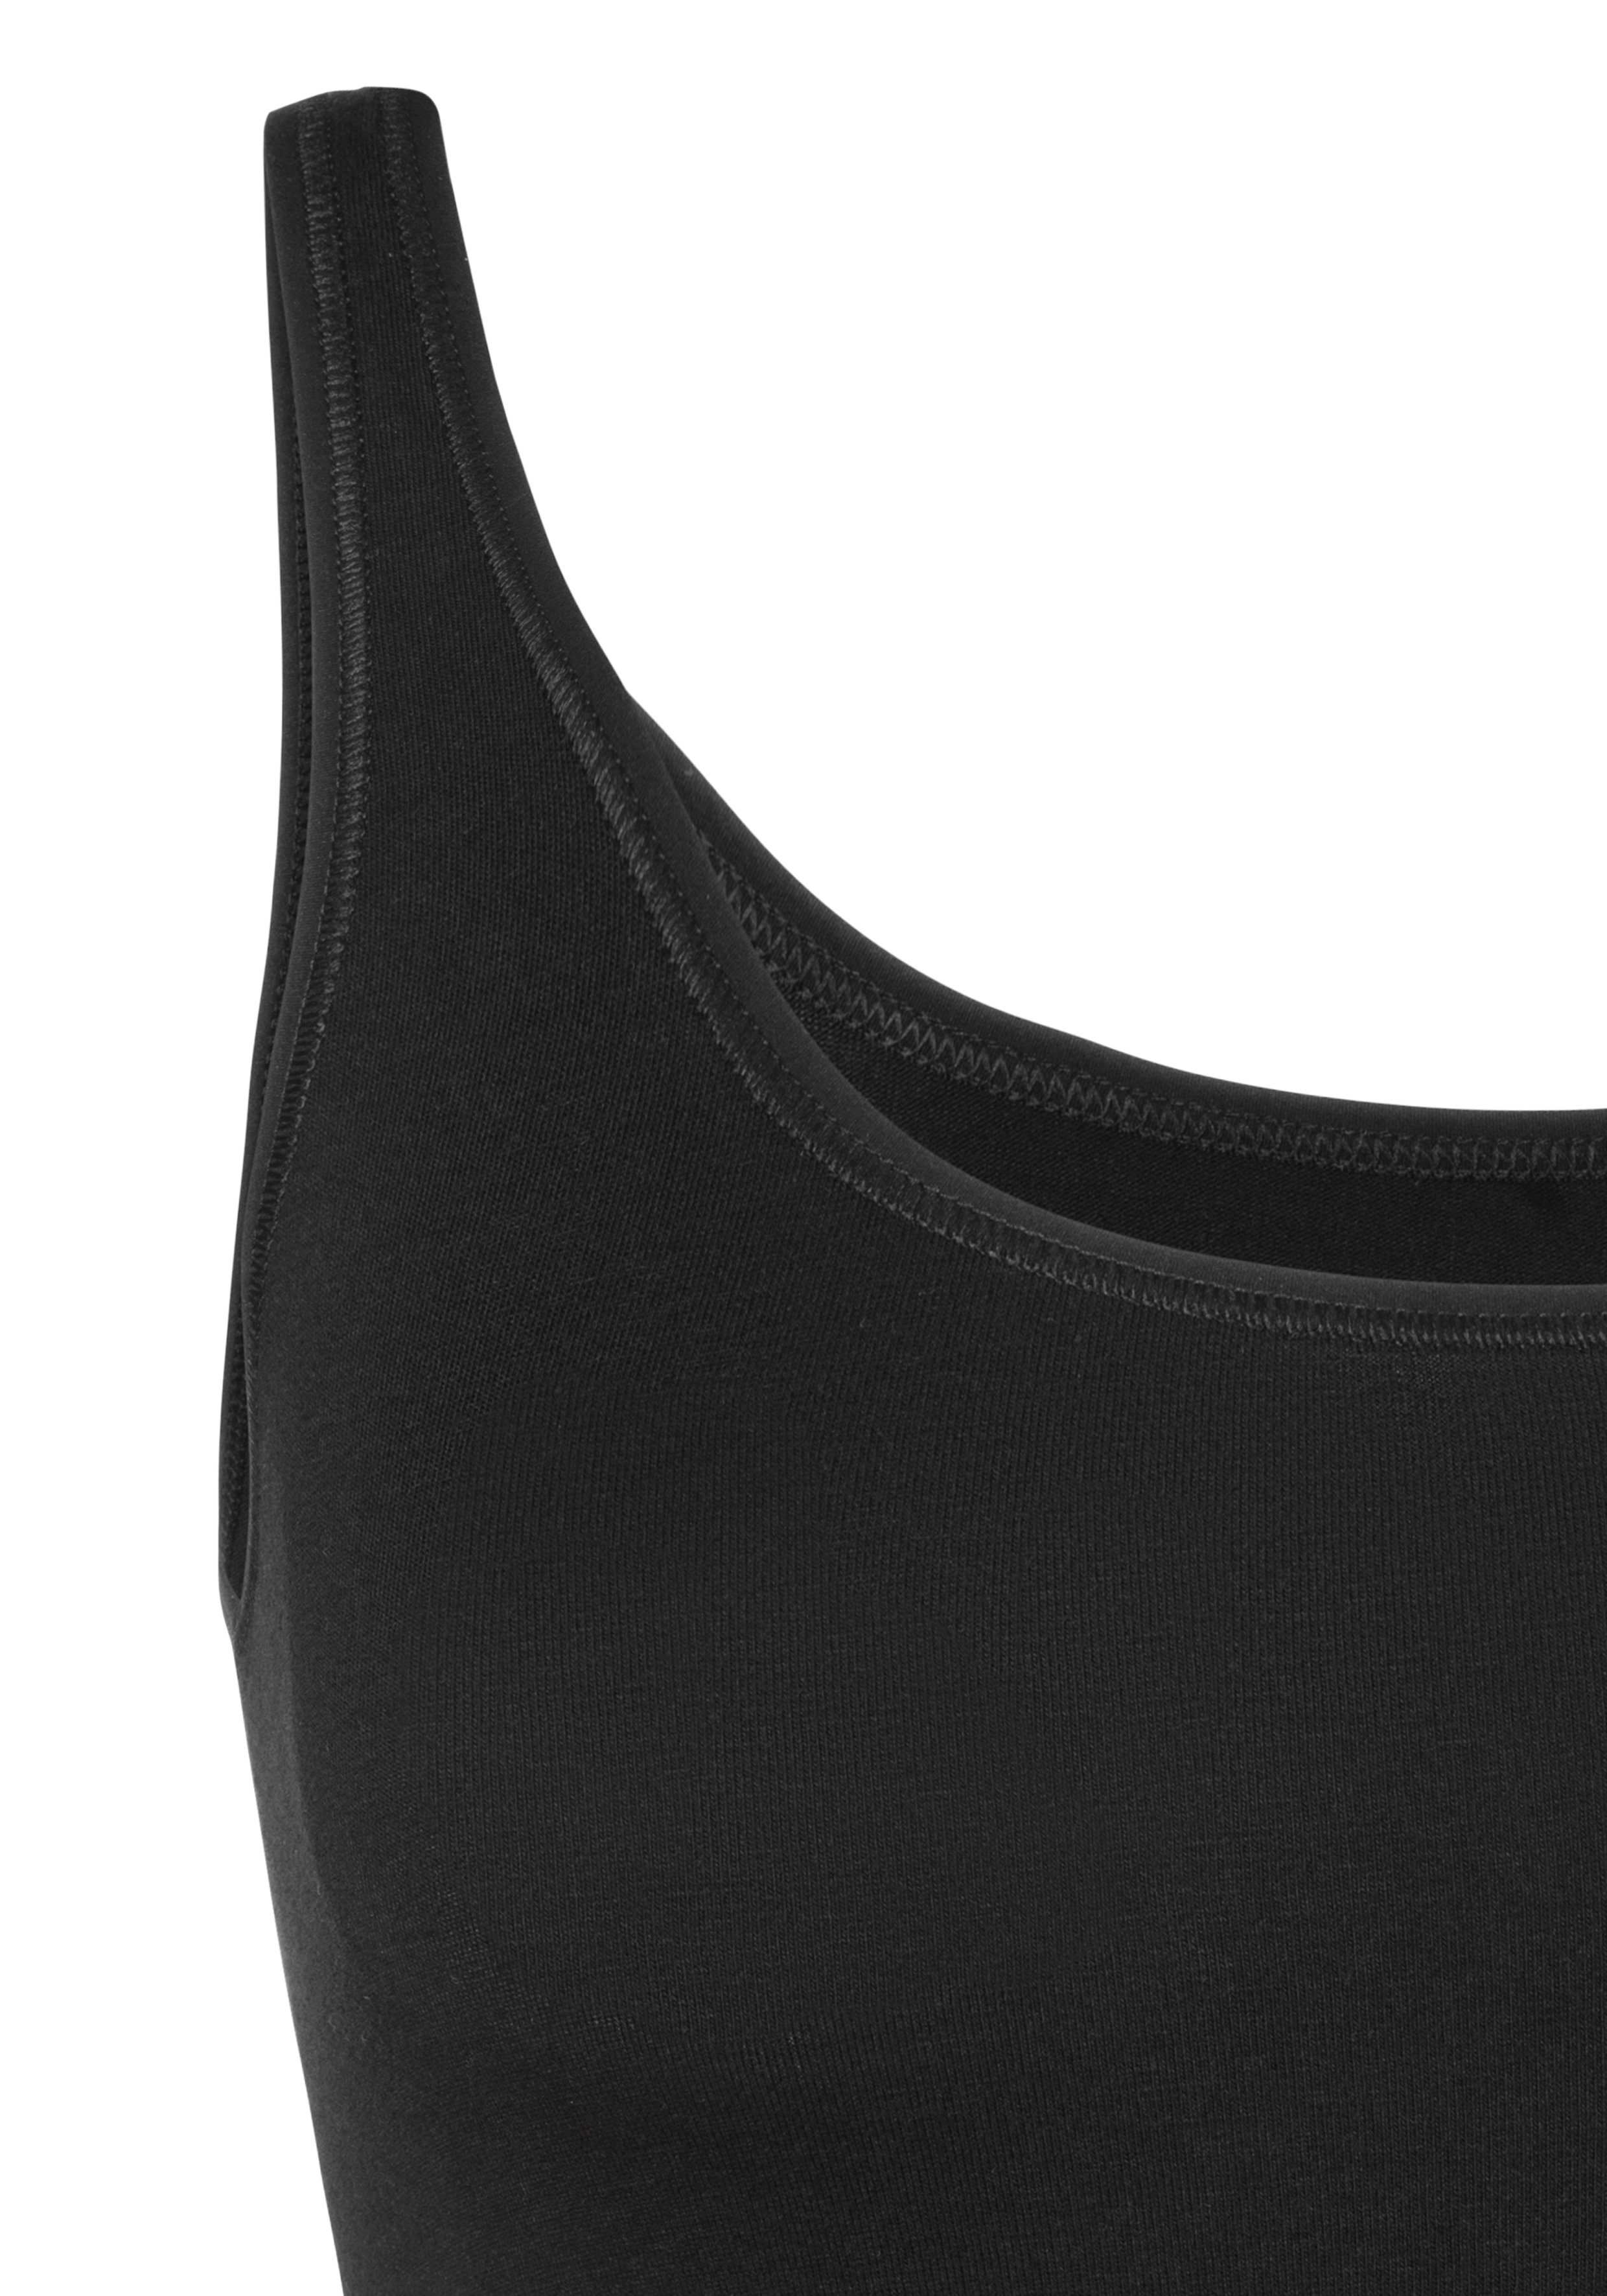 Schiesser Unterhemd (2er-Pack) mit schwarz/sand elastischer Single-Jersey-Qualität